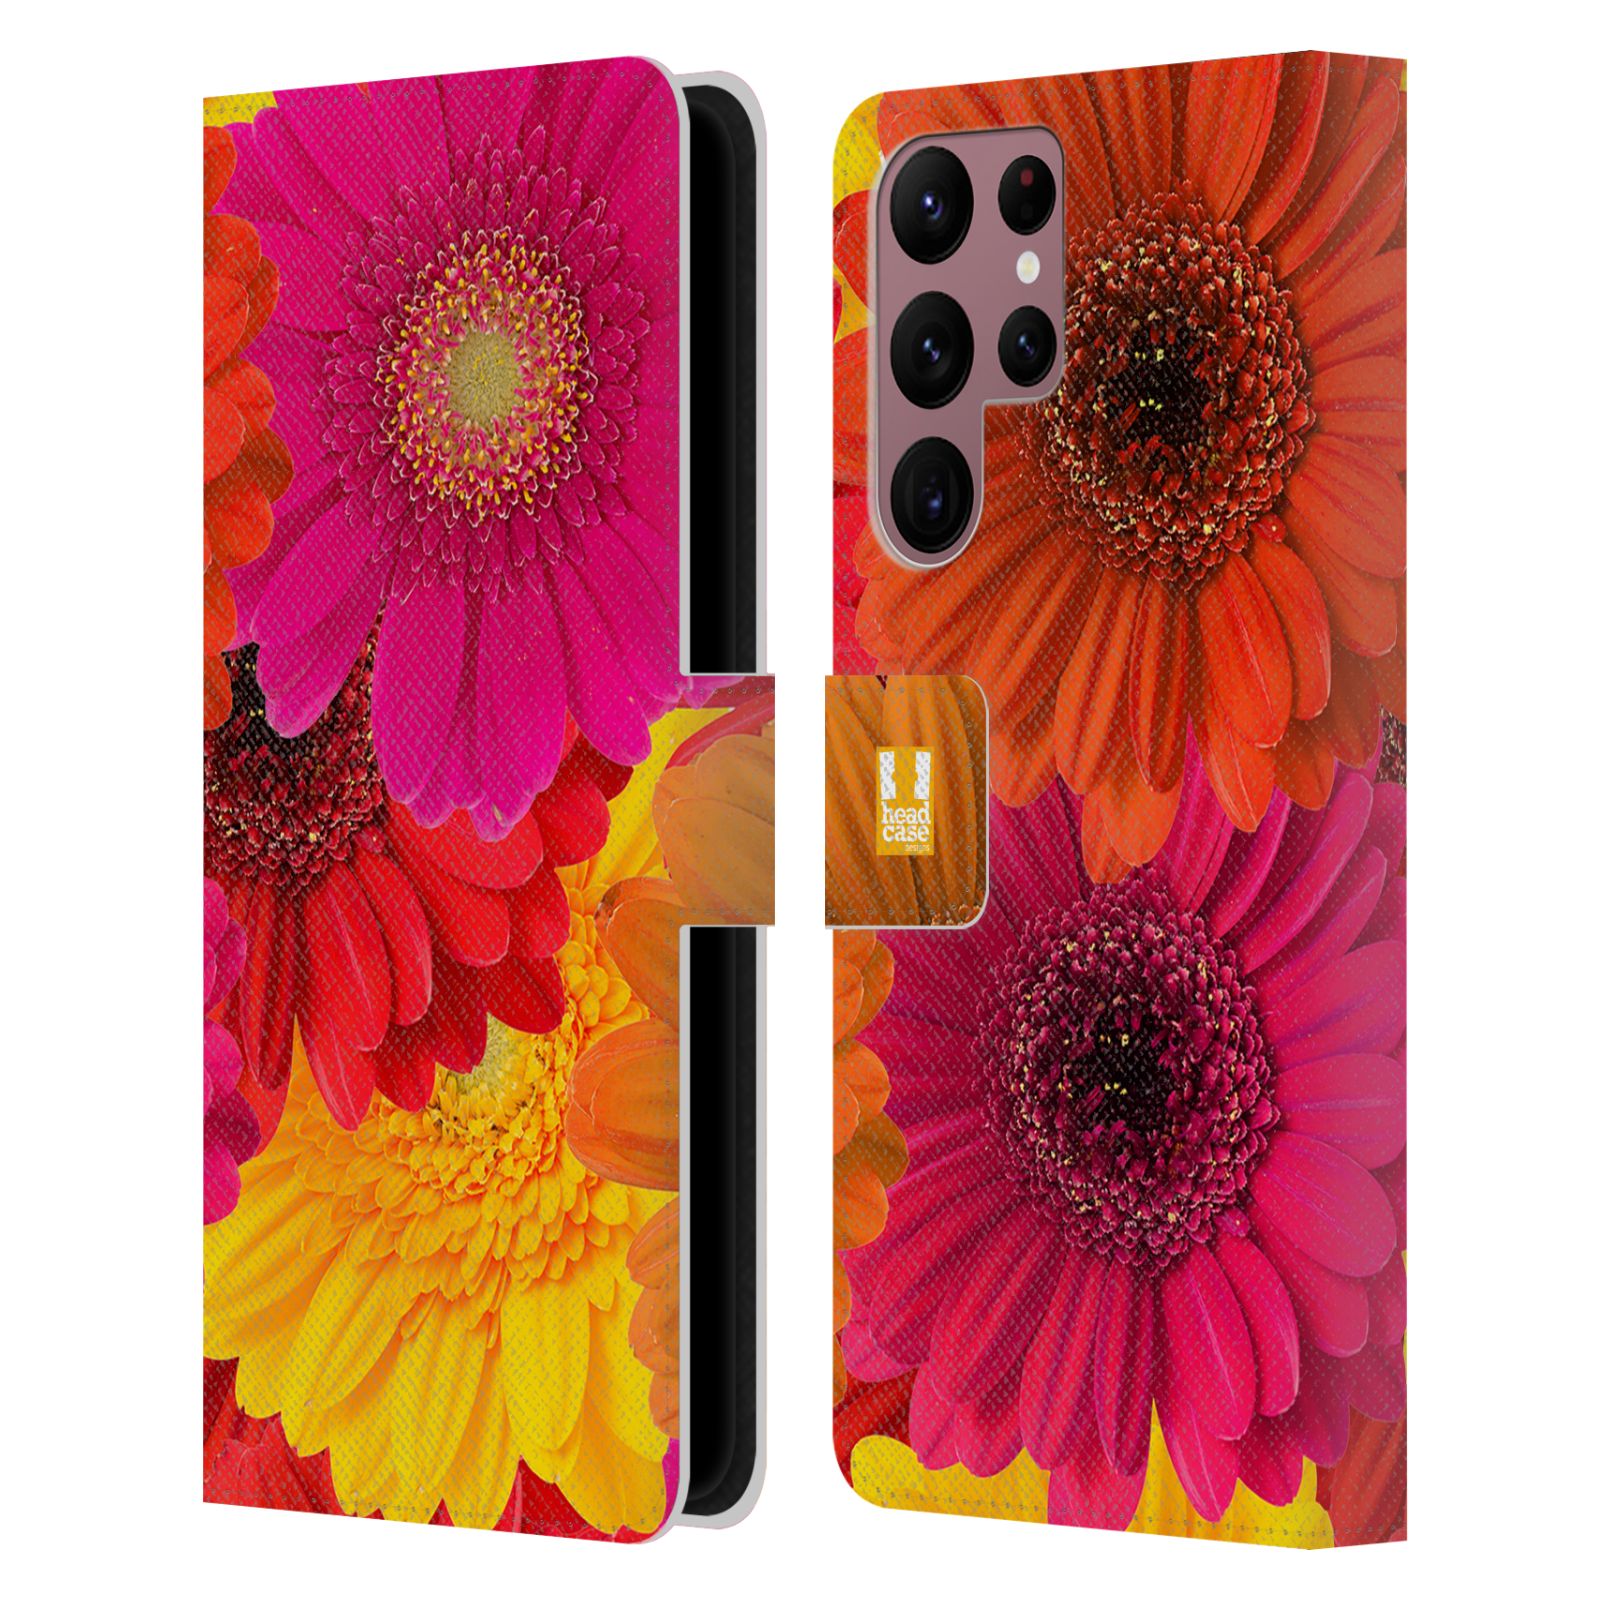 Pouzdro HEAD CASE na mobil Samsung Galaxy S22 ULTRA 5G květy foto fialová, oranžová GERBERA